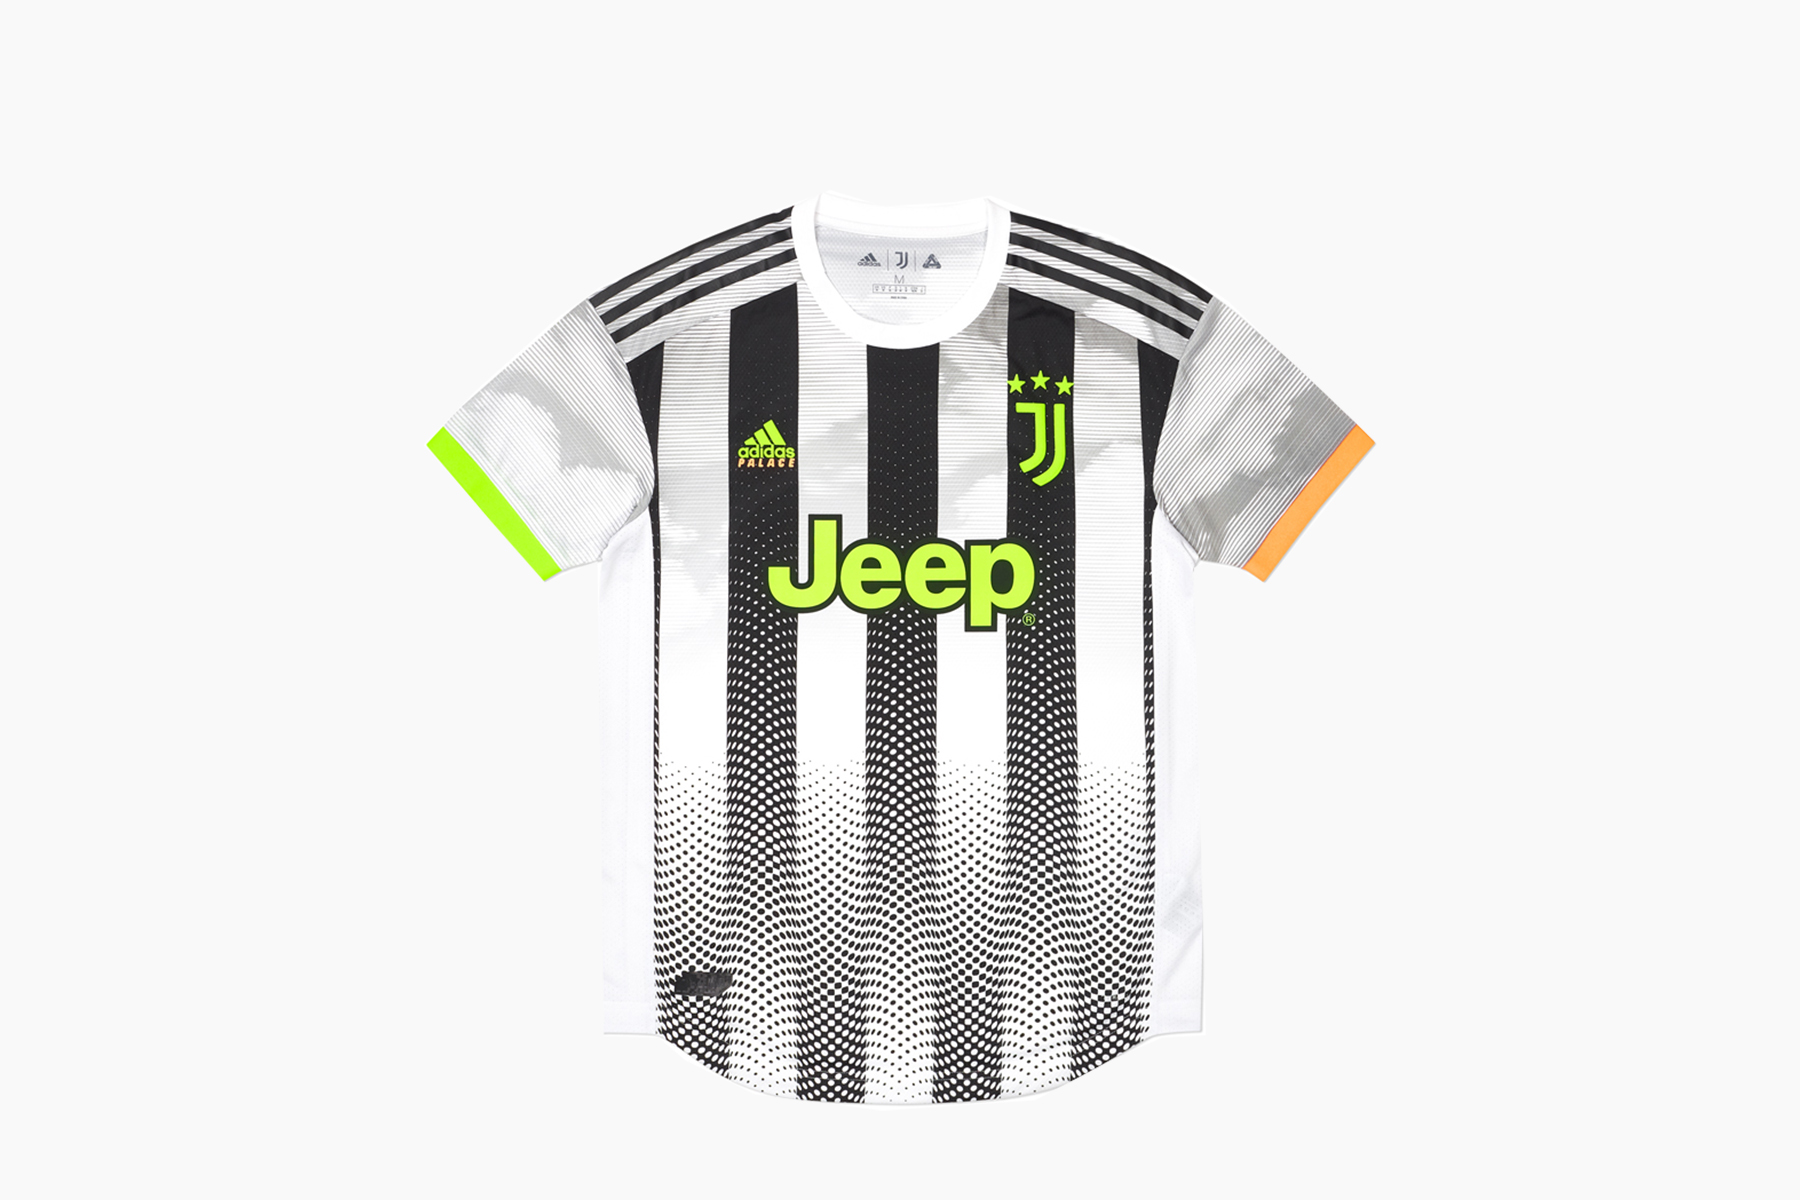 Juventus x Palace x adidas Football Collection